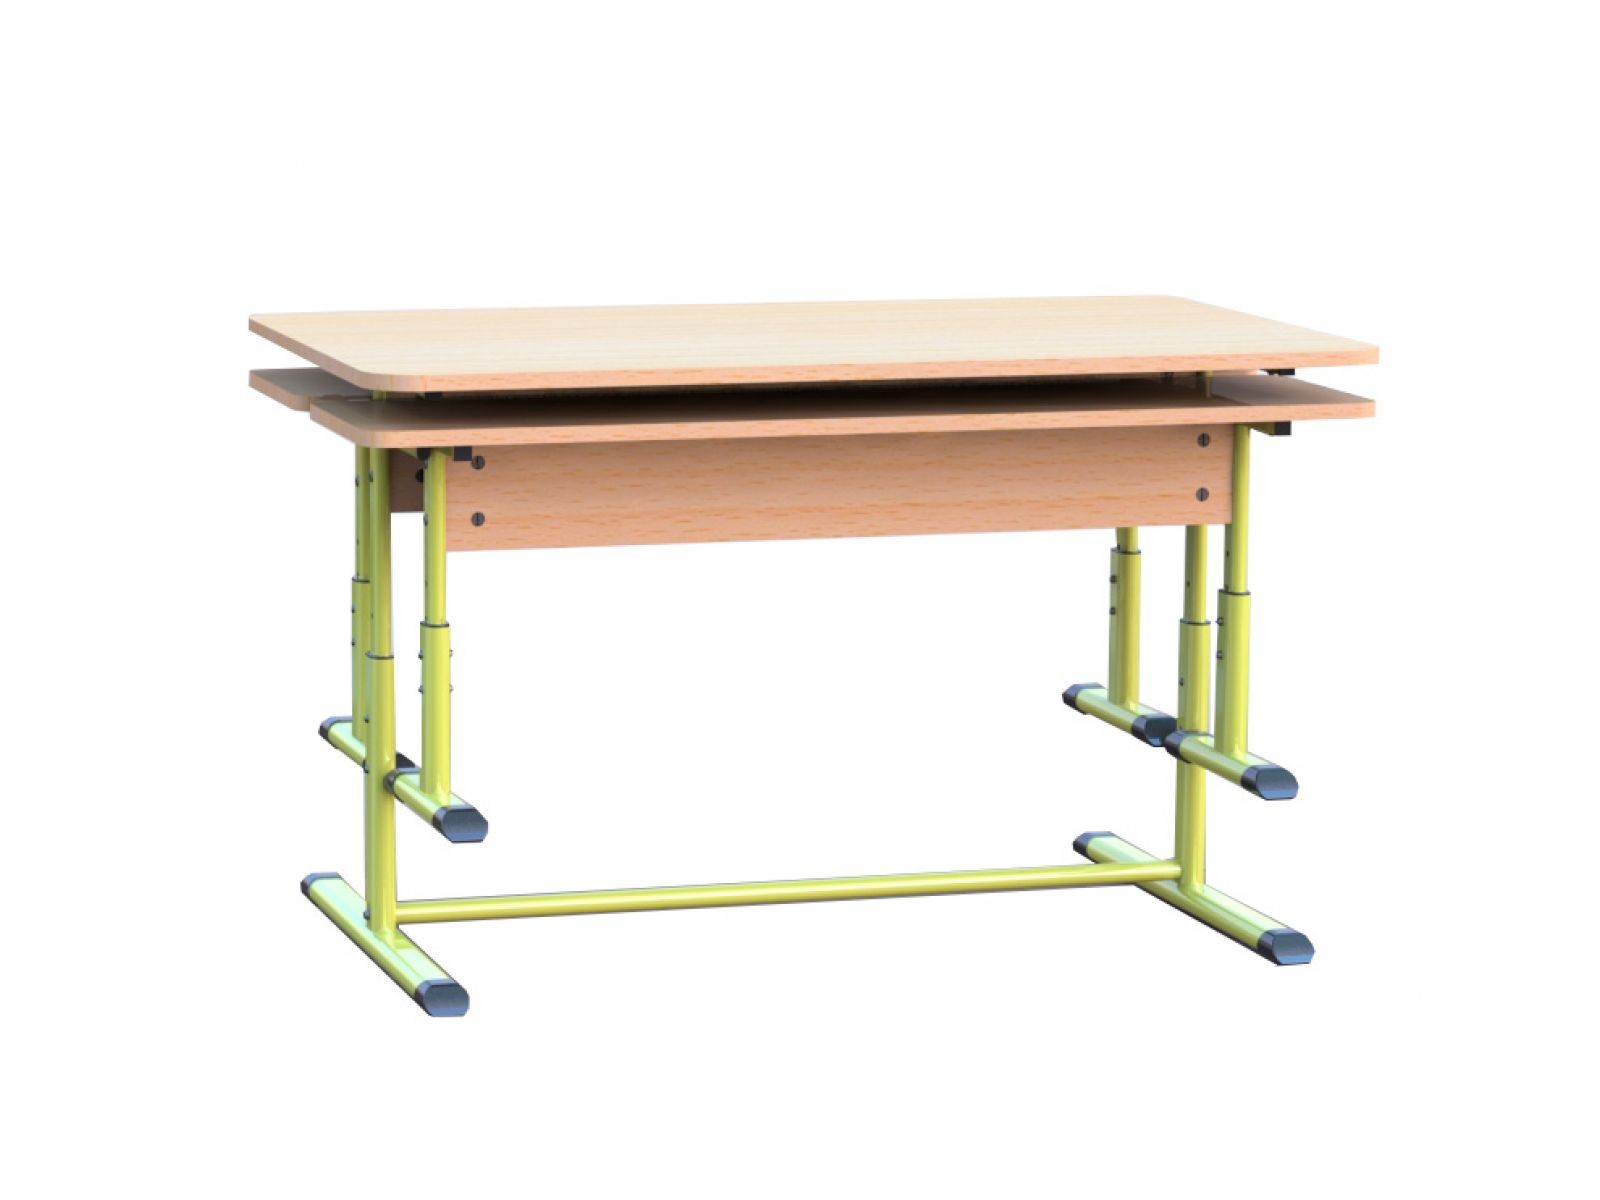 столы и стулья для школьной столовой